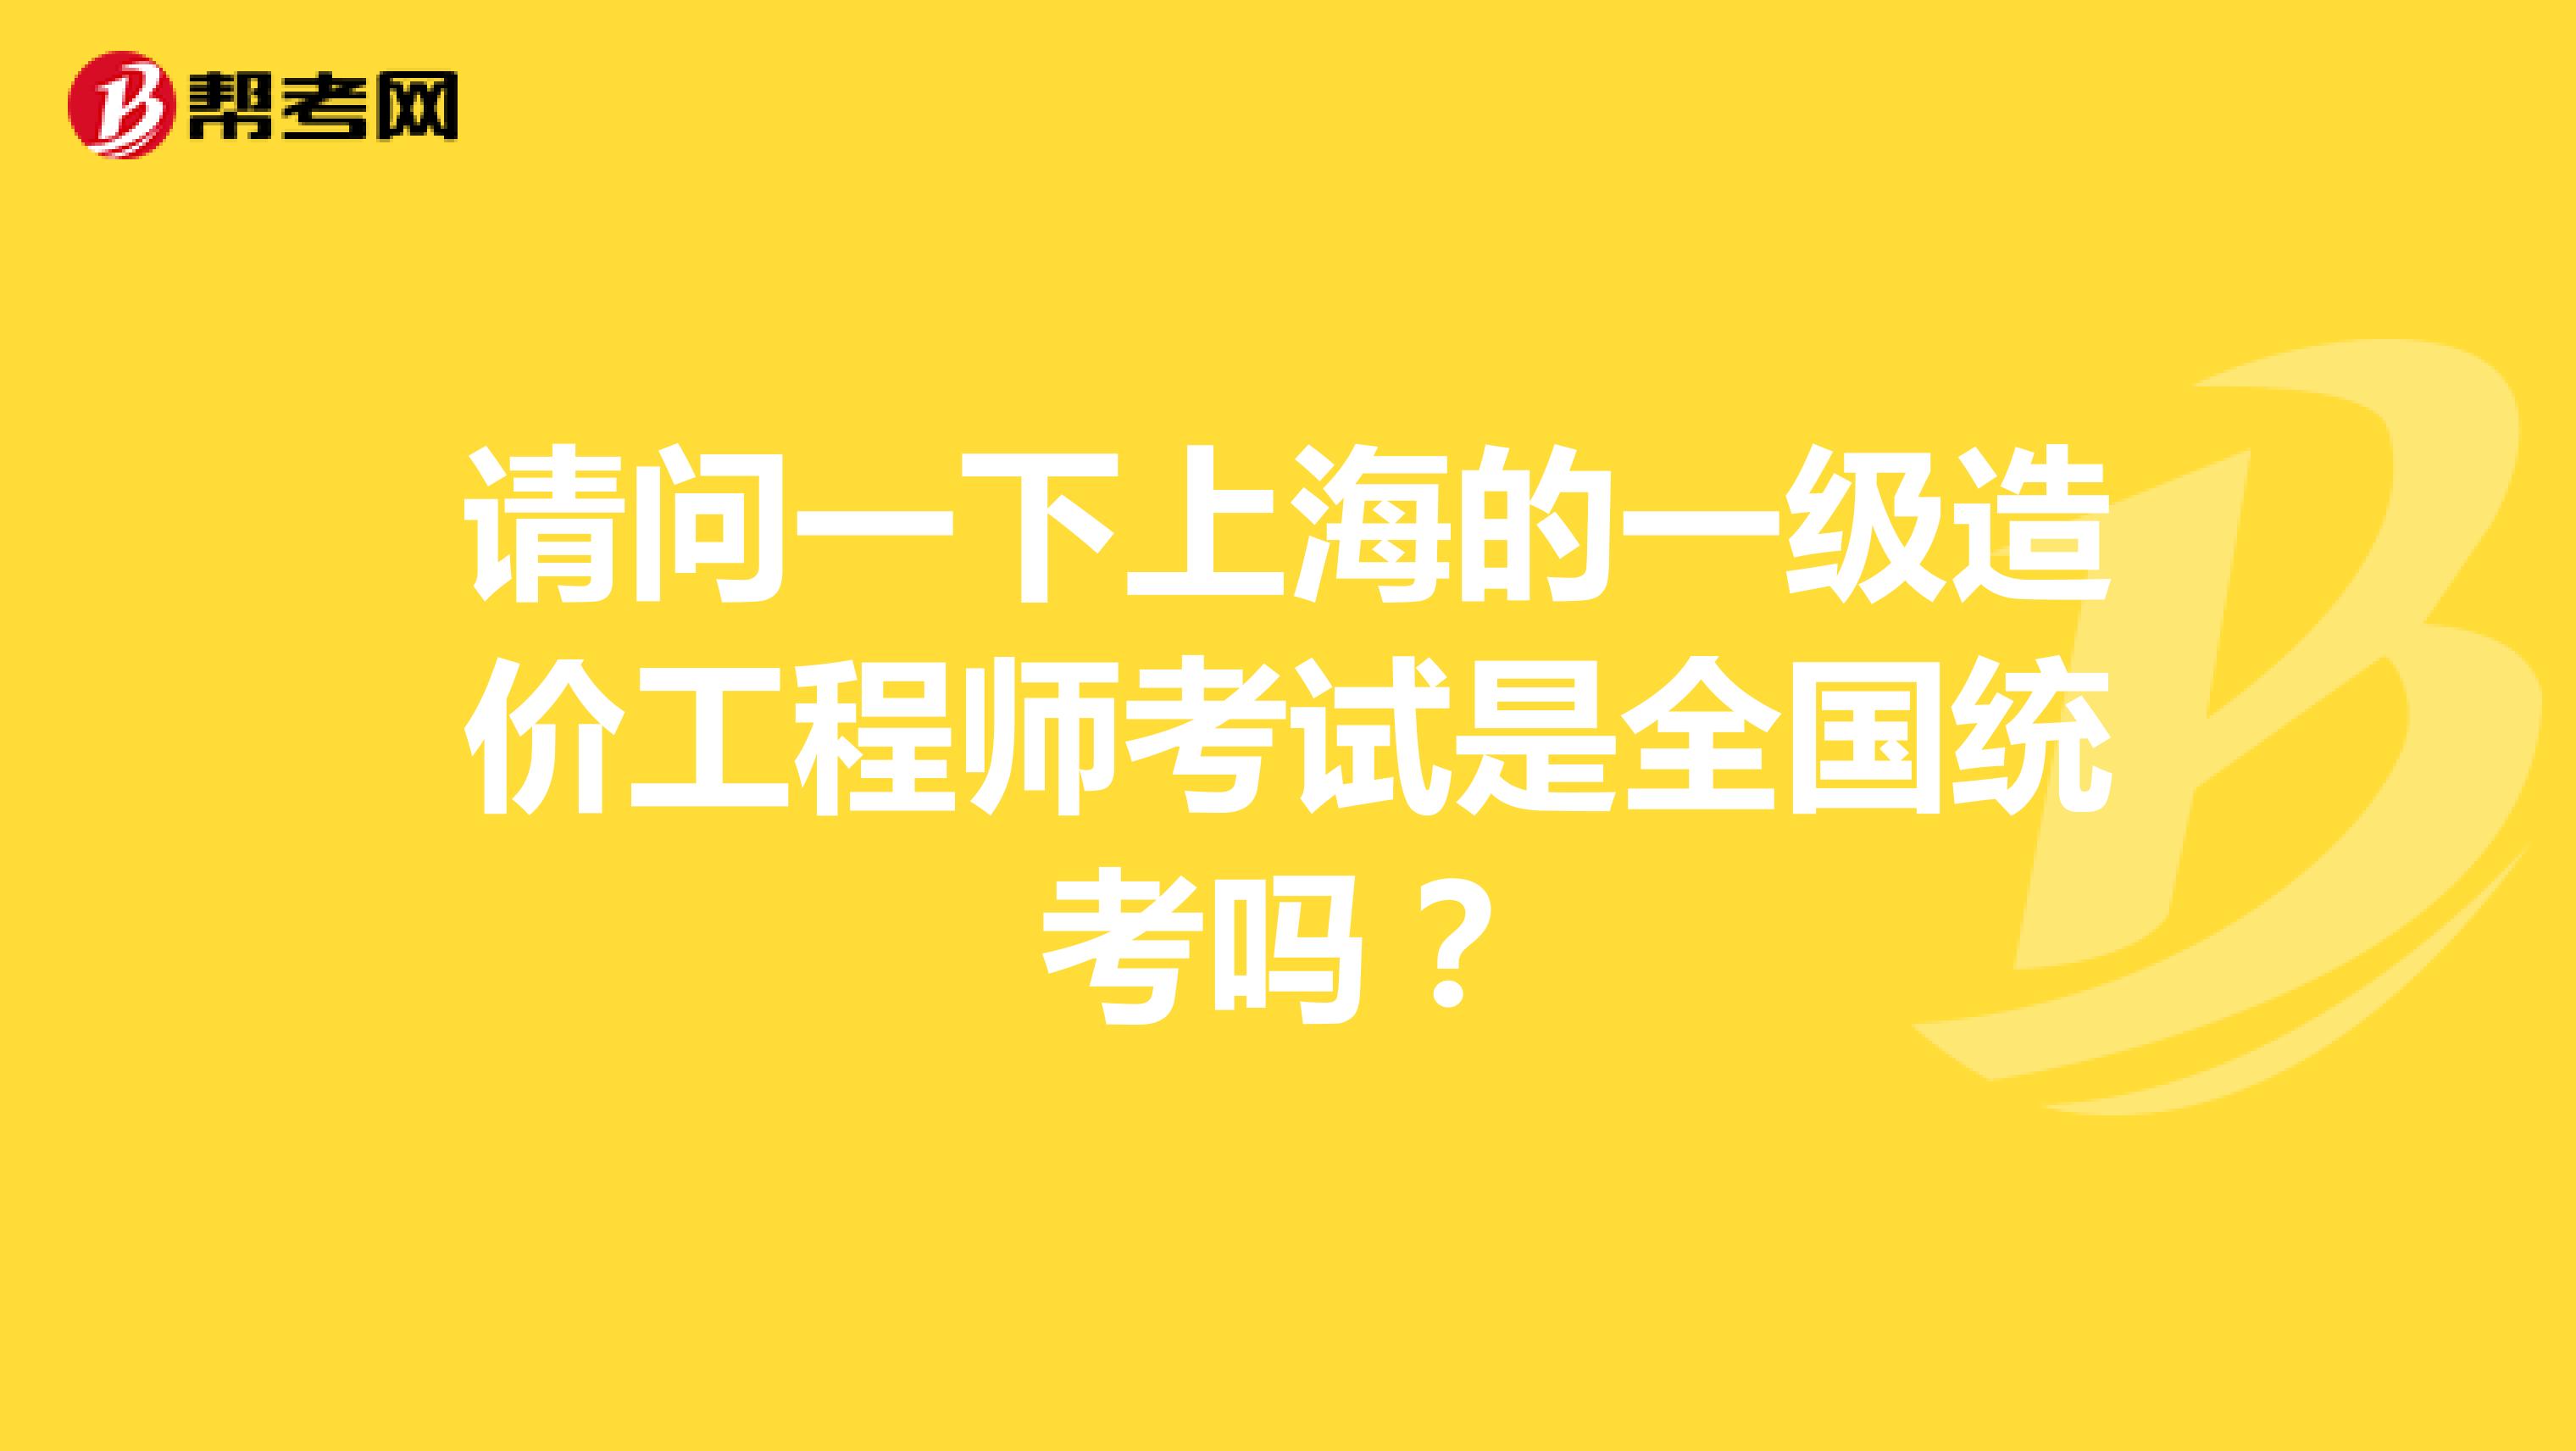 请问一下上海的一级造价工程师考试是全国统考吗？